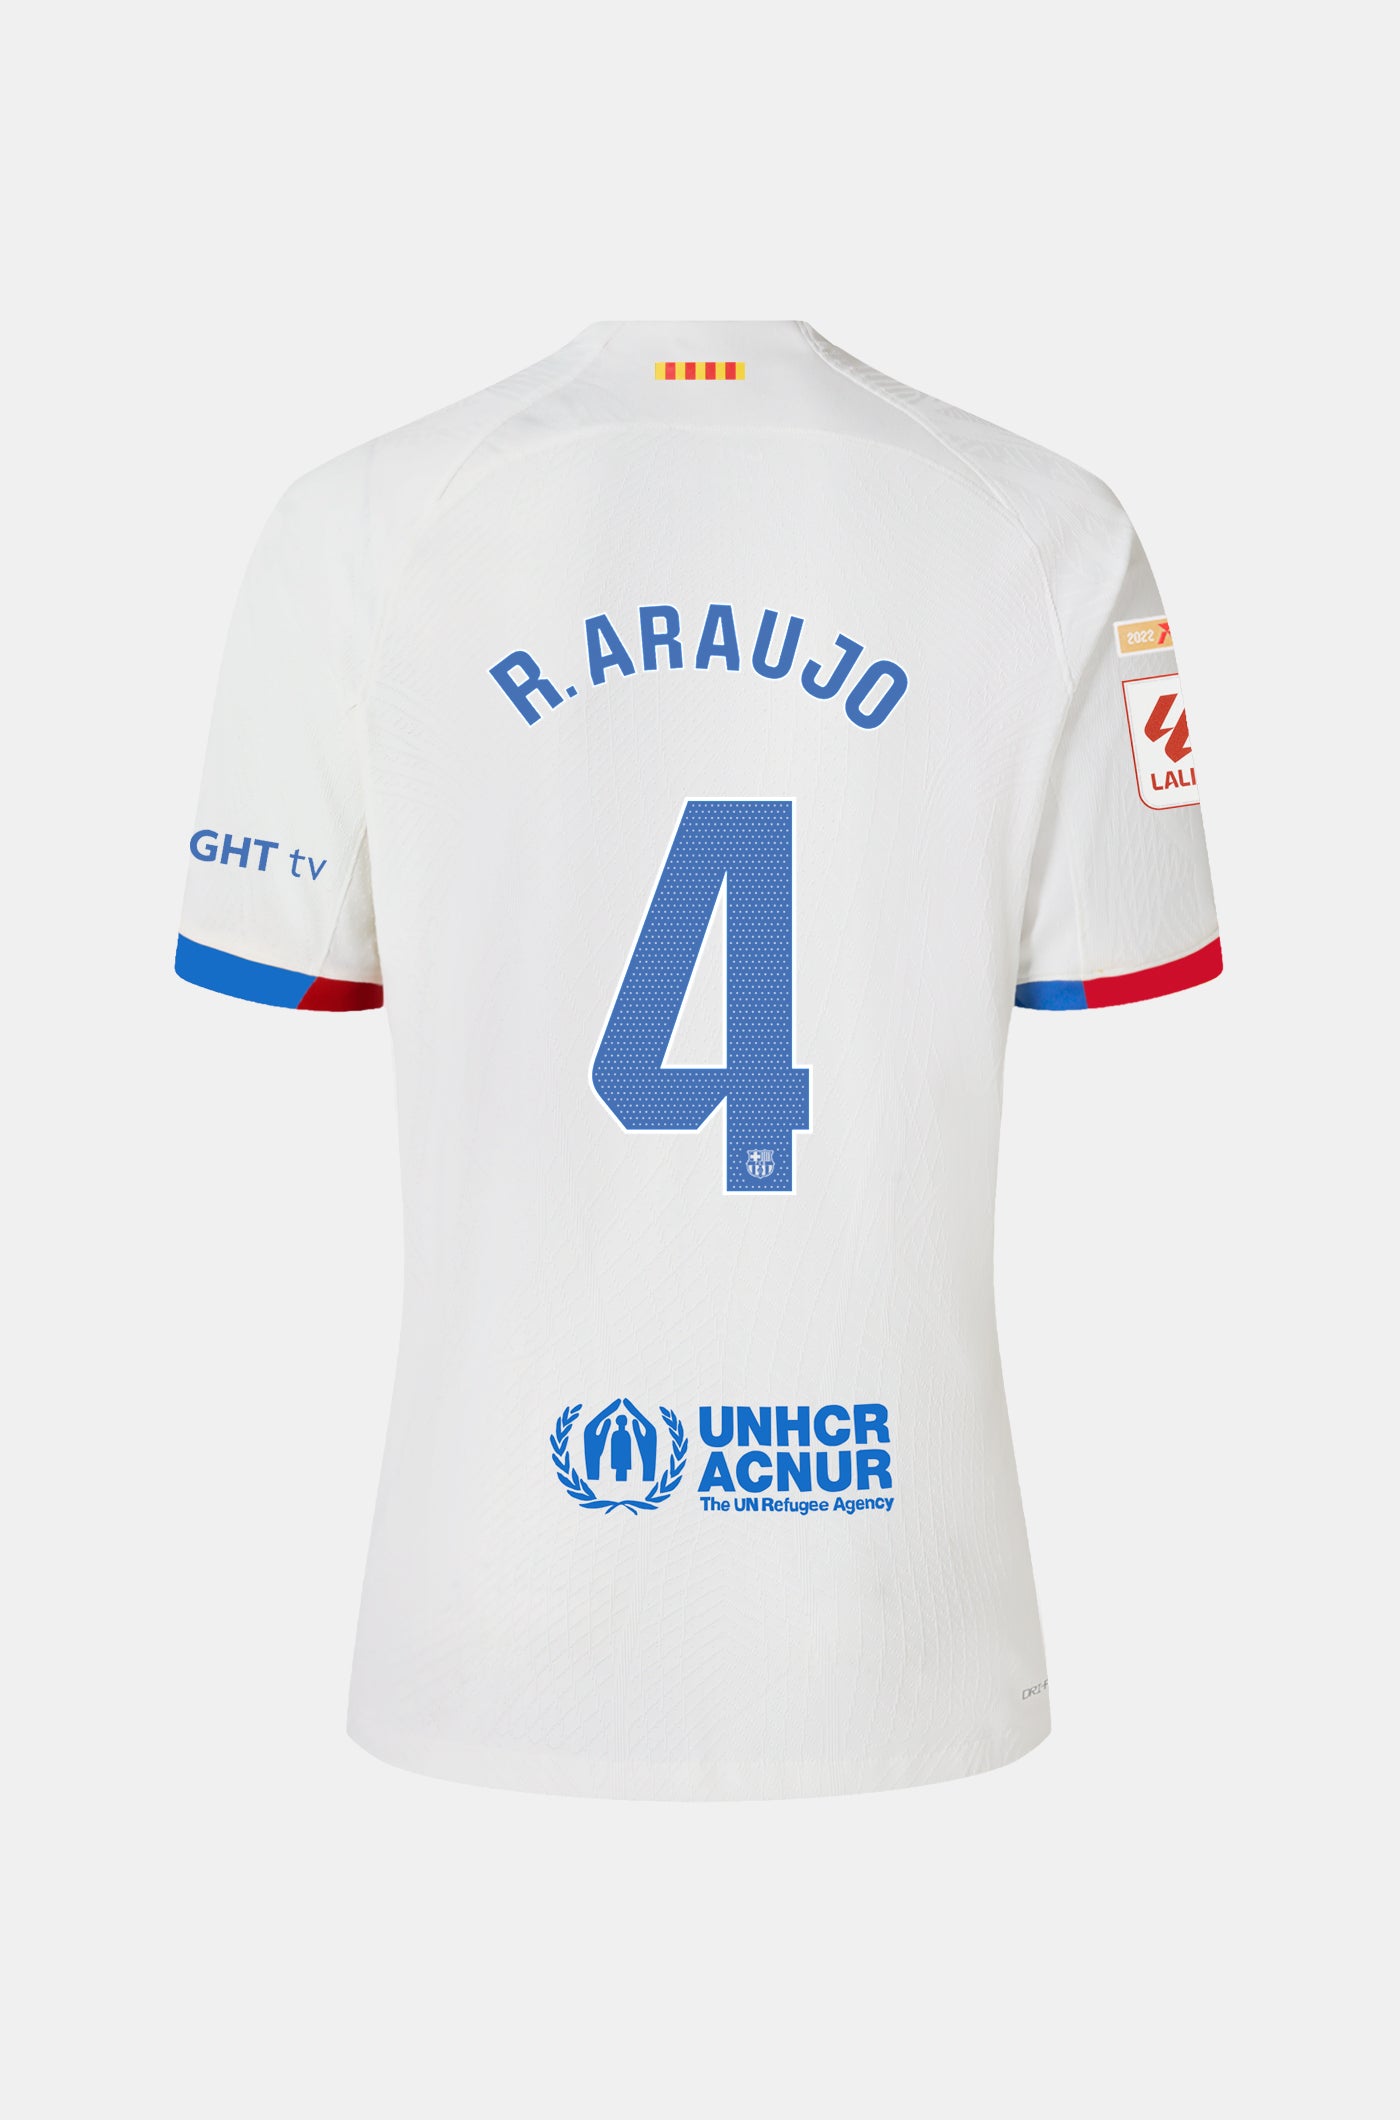 LFP FC Barcelona away shirt 23/24 - Junior - R. ARAUJO